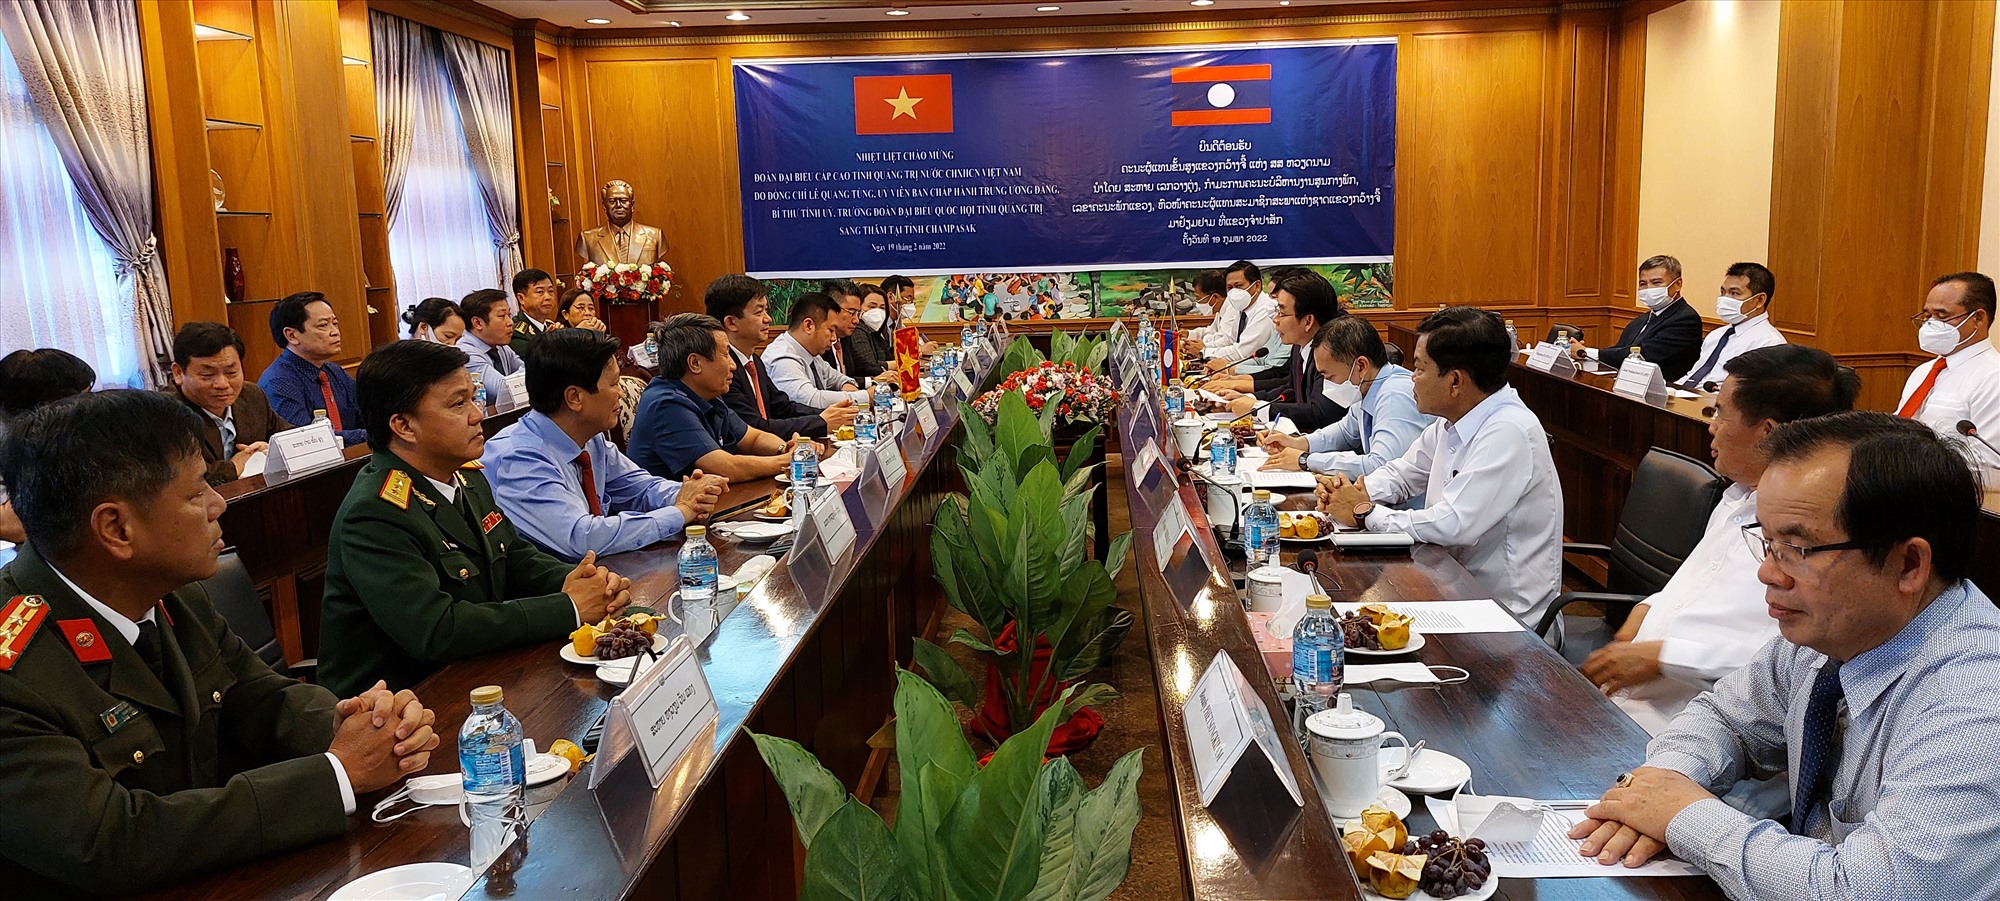 Đoàn đại biểu cấp cao hai tỉnh Quảng Trị và Champasak chia sẻ thông tin, đề nghị thúc đẩy hợp tác giữa hai tỉnh - Ảnh: N.T.H